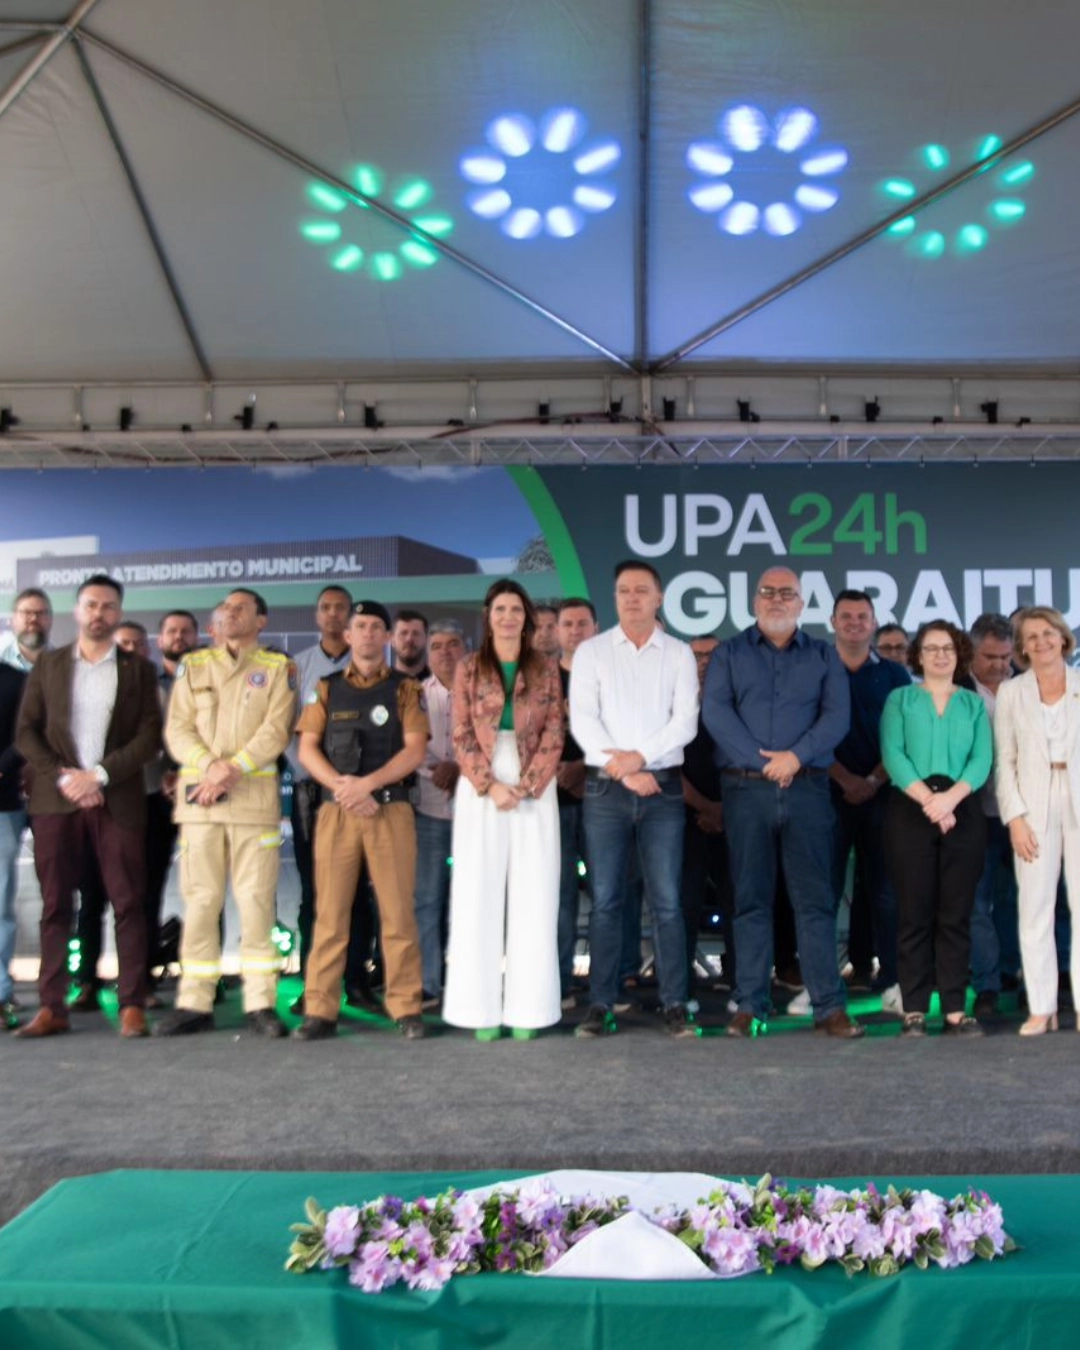 Imagem de destaque - Ordem de serviço para construção da nova UPA Guaraituba é assinada